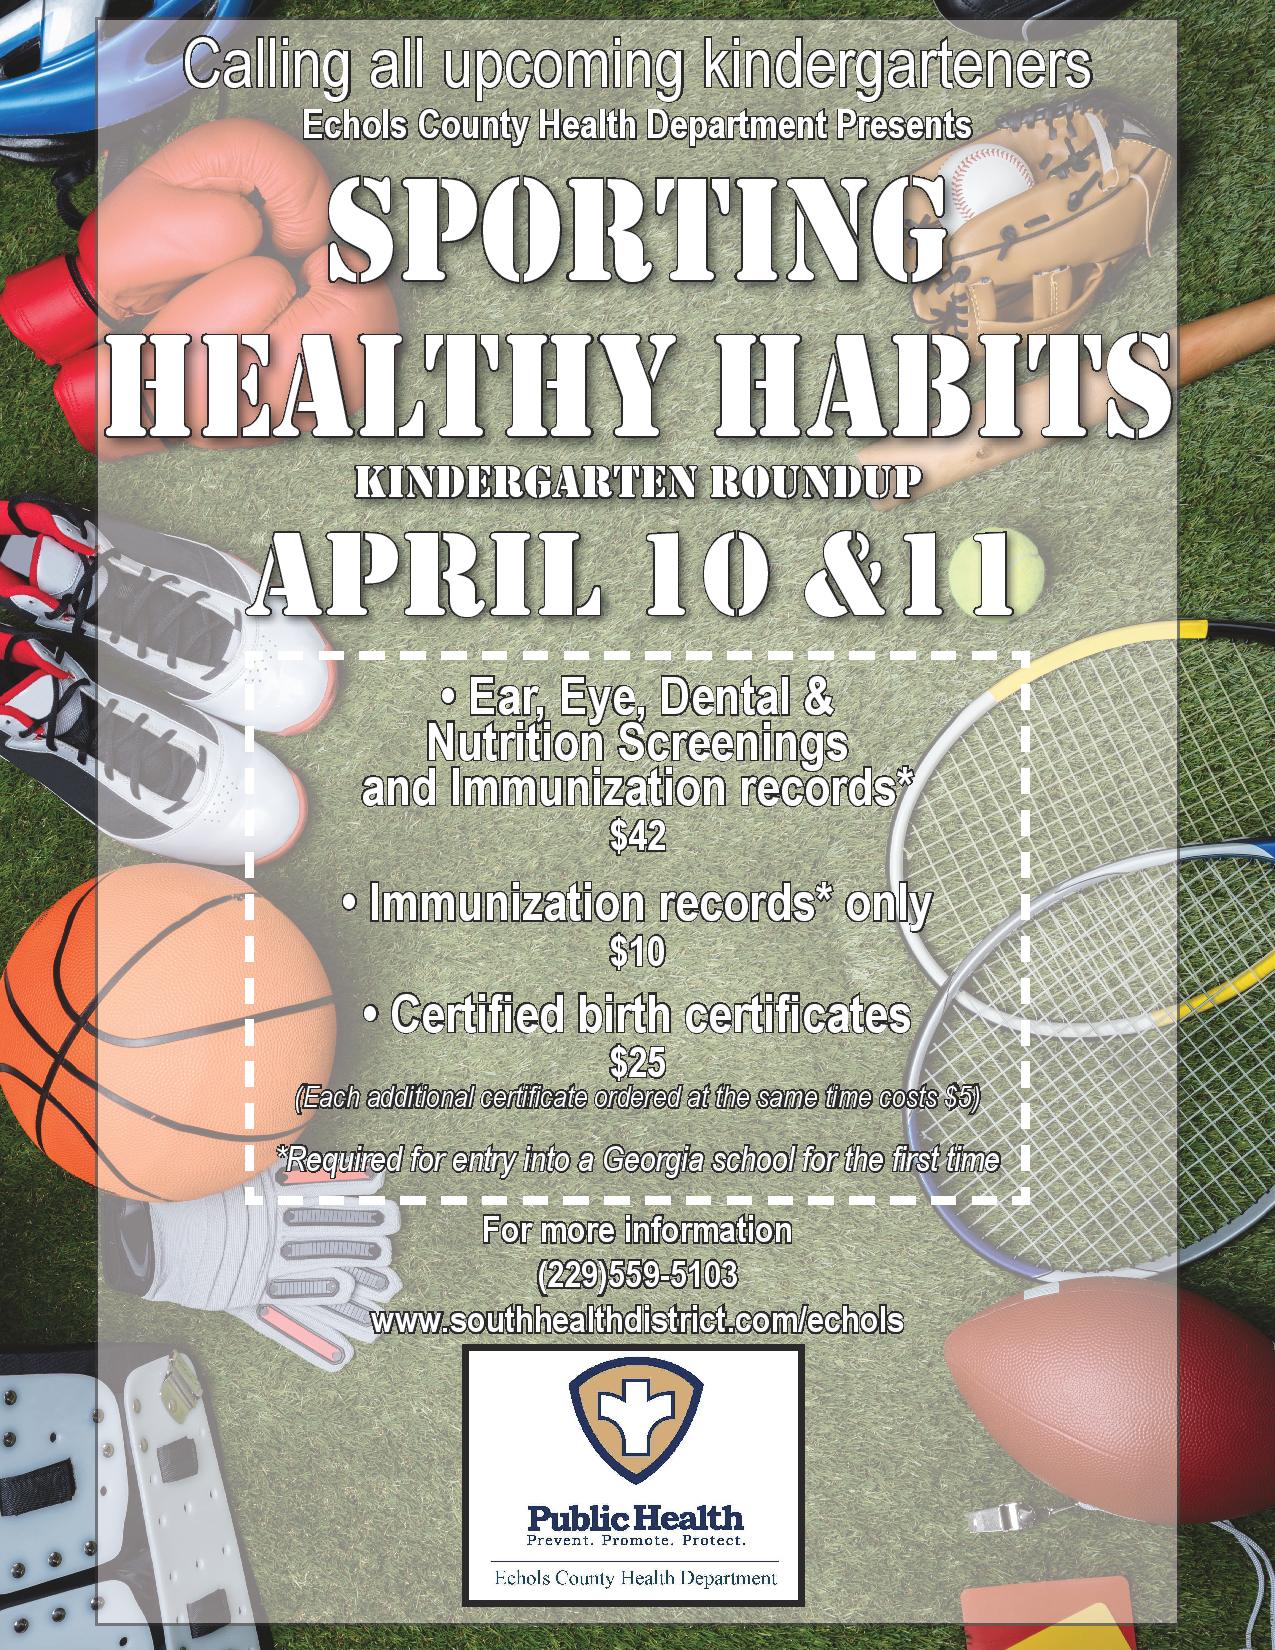 Start “Sporting Healthy Habits” at Kindergarten Roundup